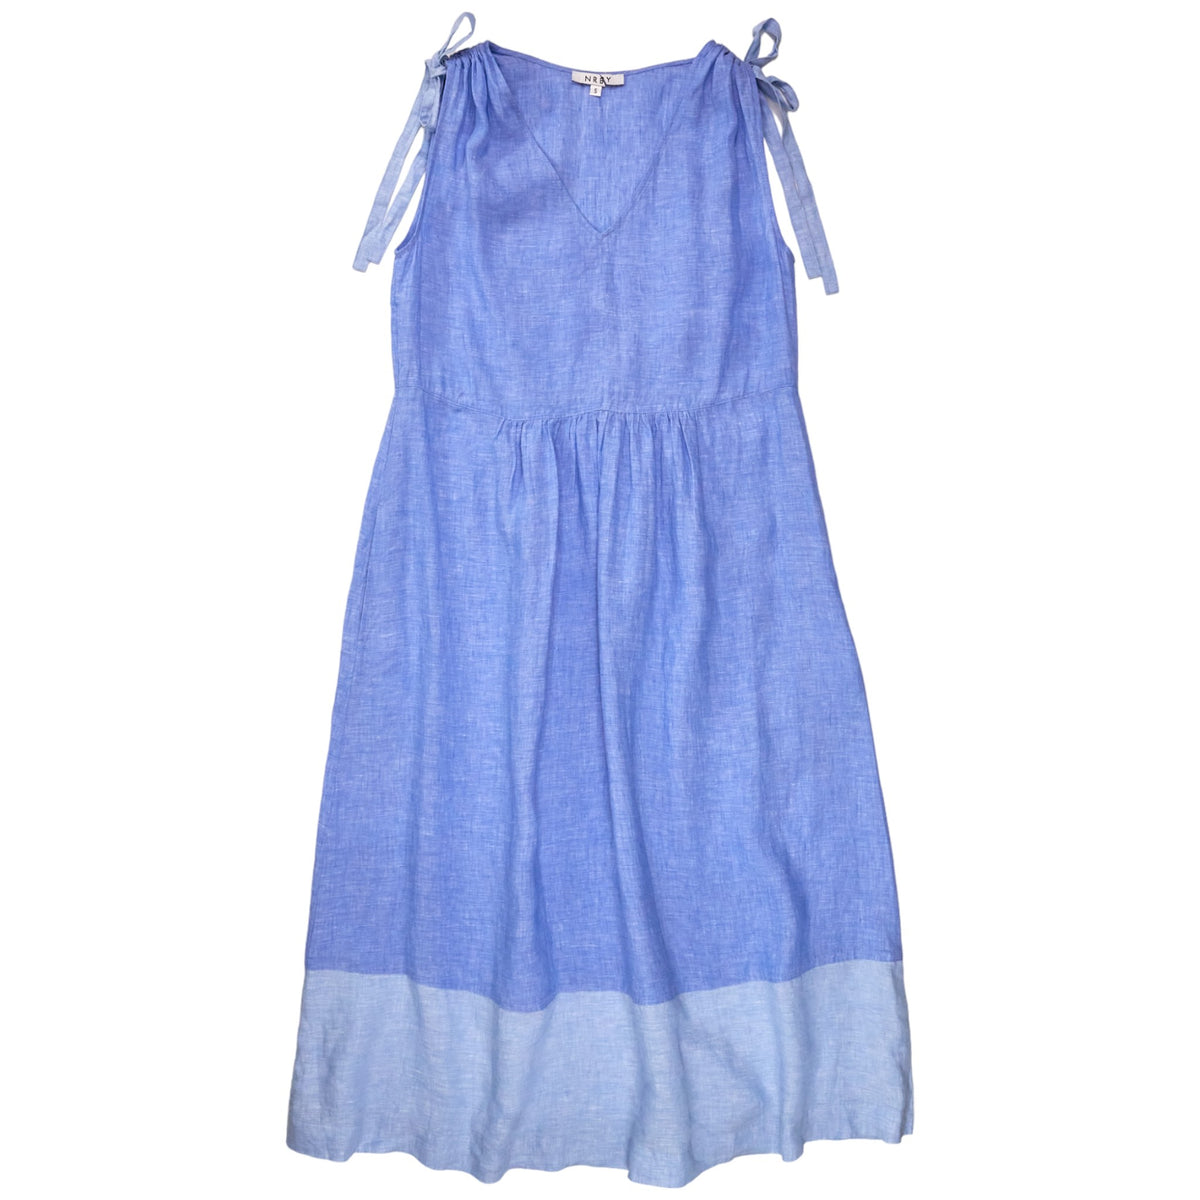 NRBY Blue Linen Sleeveless Dress